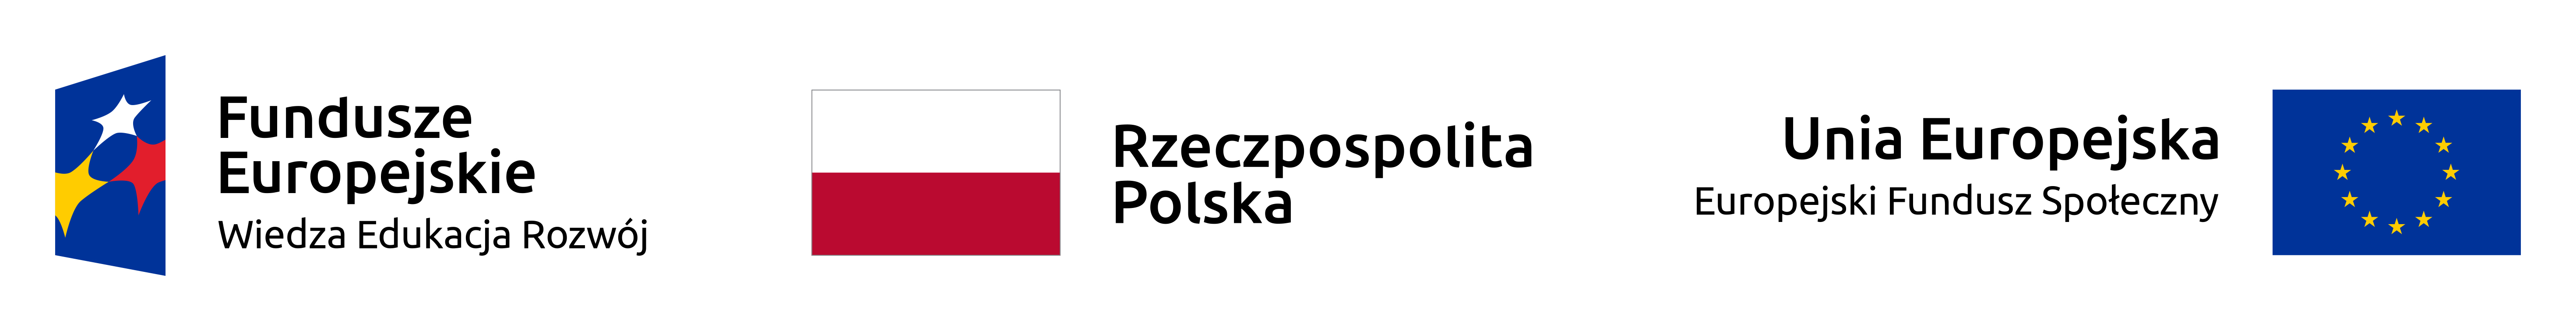 Logotyp z napisem Fundusze Europejskie, Wiedza, Edukacja, Rozwój - po prawej stronie niebieskiego, pionowego rombu z trzema gwiazdami w kolorach: białym, żółtym i czerwonym. Flaga Rzeczpospolitej Polskiej - biały prostokąt nad czerwonym prostokątem. Logotyp z napisem Unia Europejska, Europejski Fundusz Społeczny po lewej stronie niebieskiego poziomego prostokąta z okręgiem z żółtych gwiazdek.